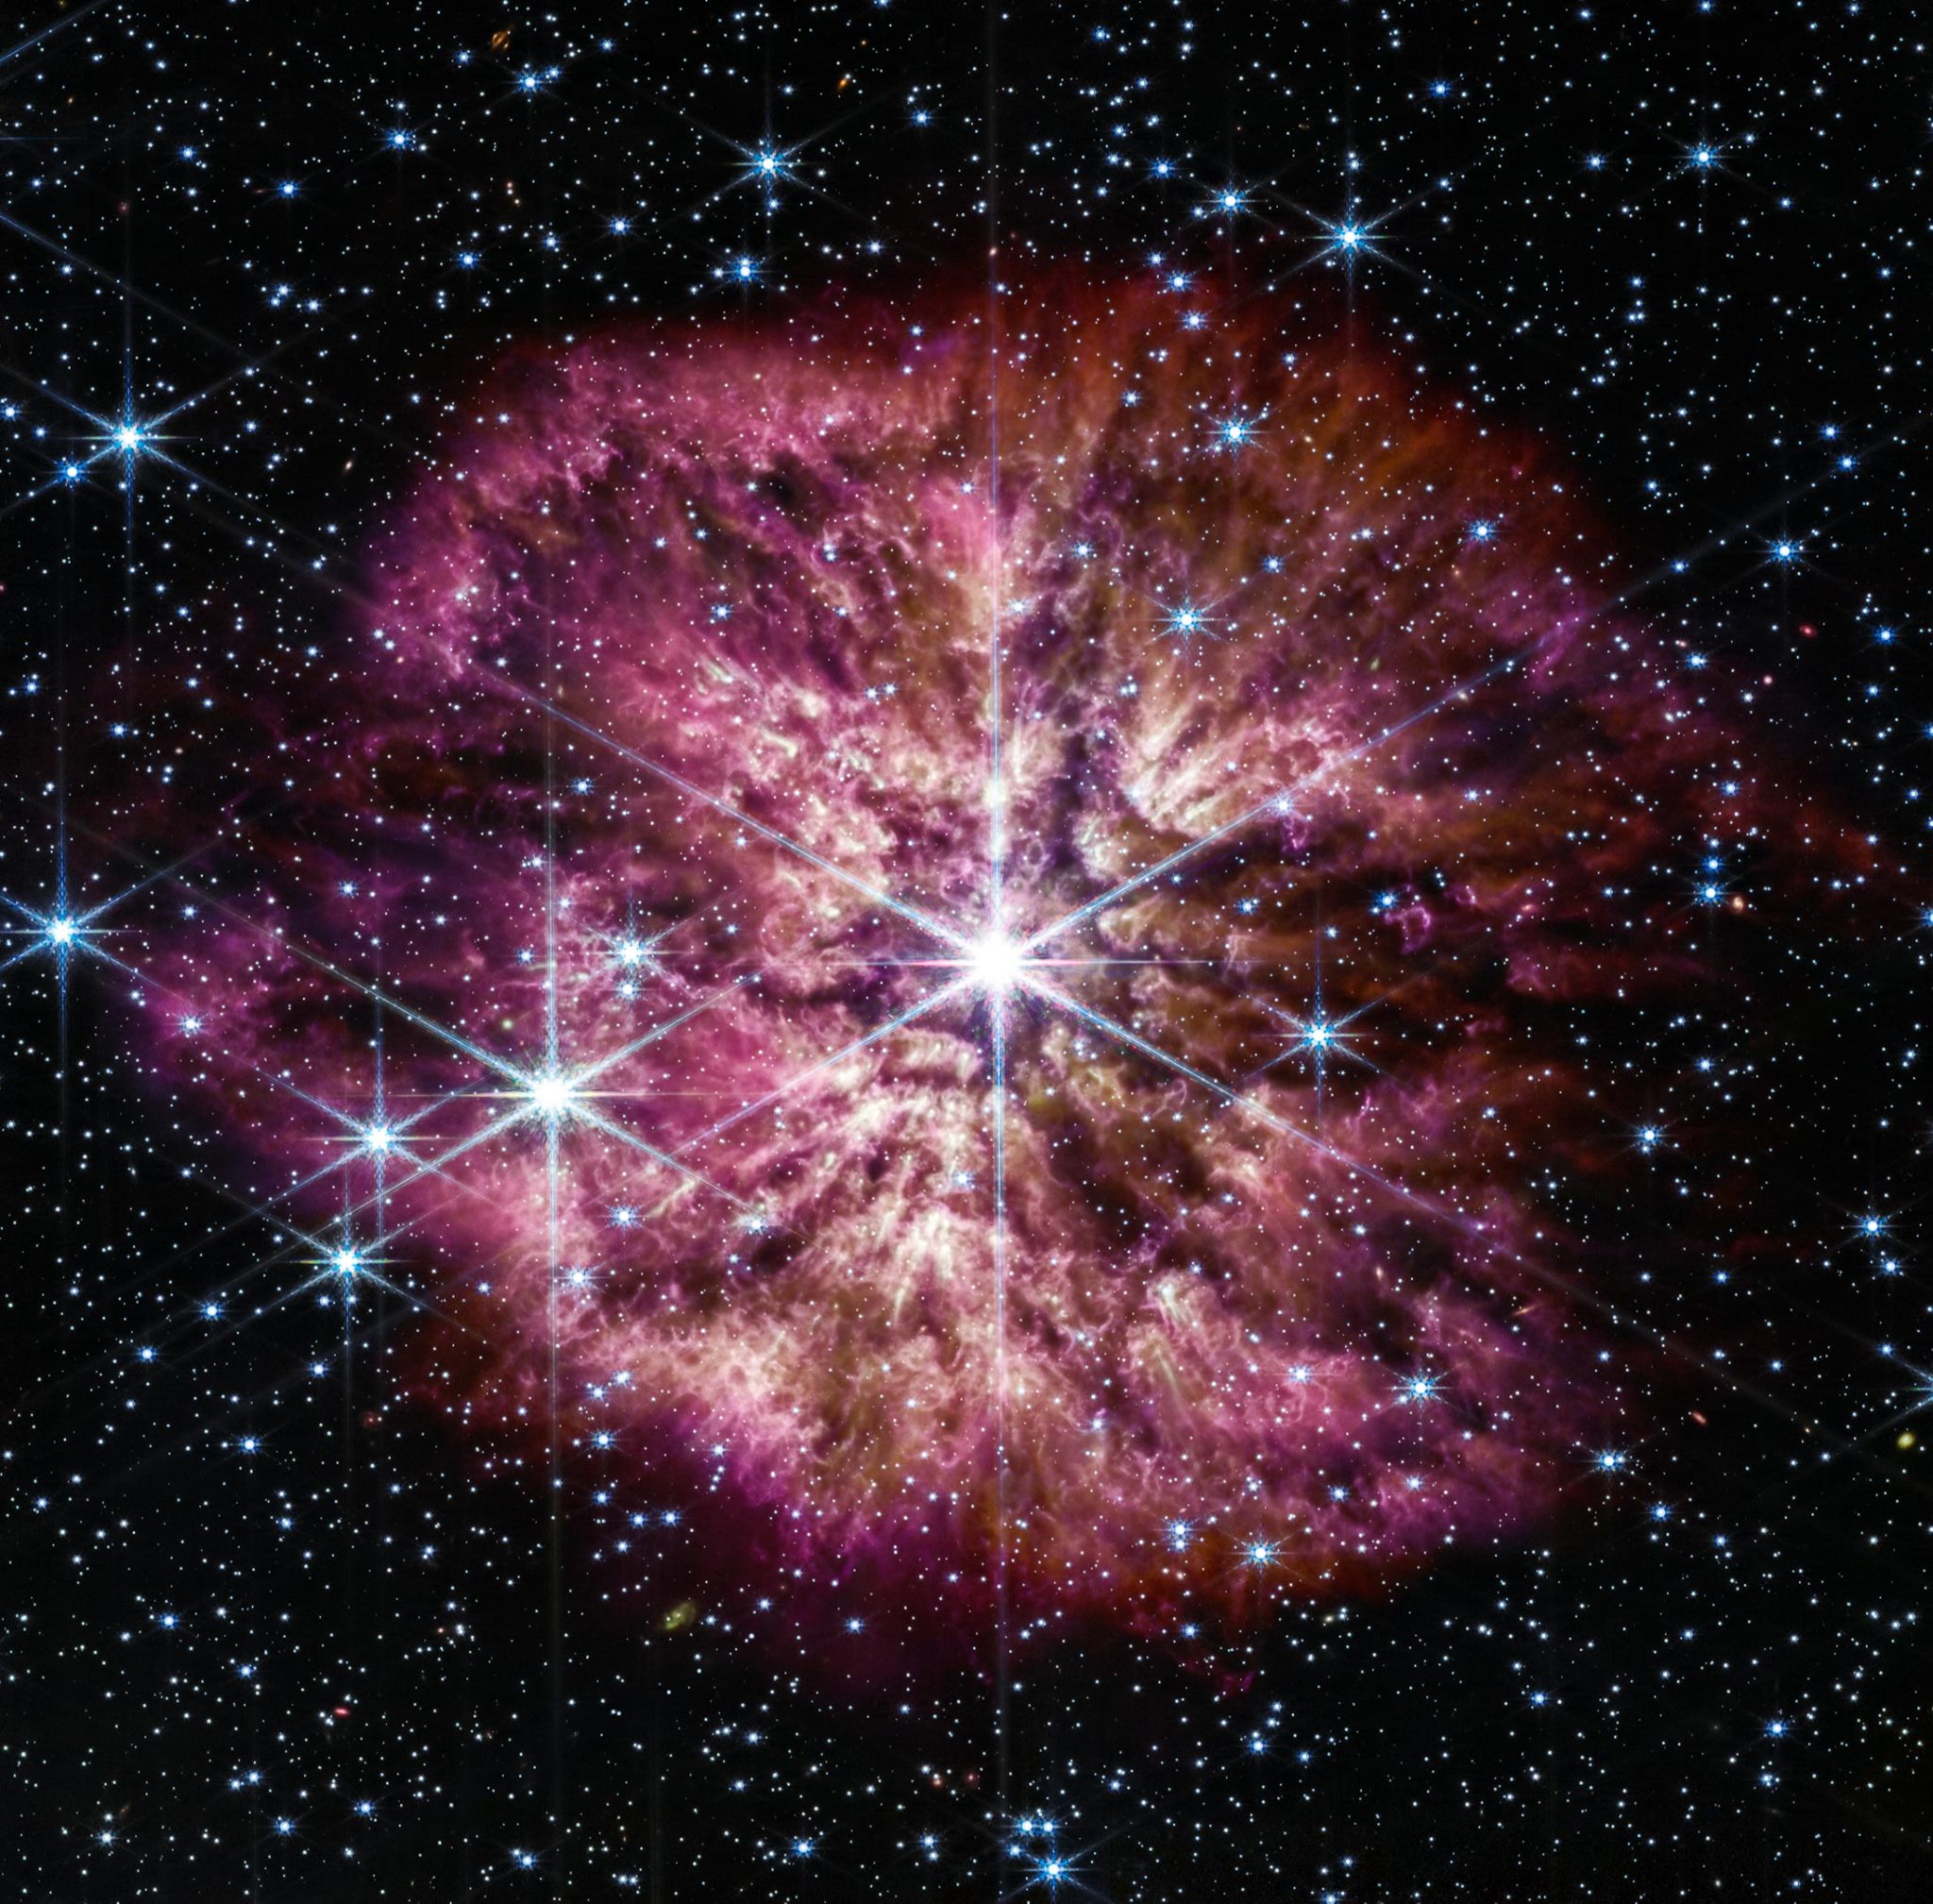 Αποκαλύφθηκε ο επικείμενος αστρικός «θάνατος» – το τηλεσκόπιο Webb της NASA καταγράφει το πρελούδιο για την εμφάνιση σουπερνόβα